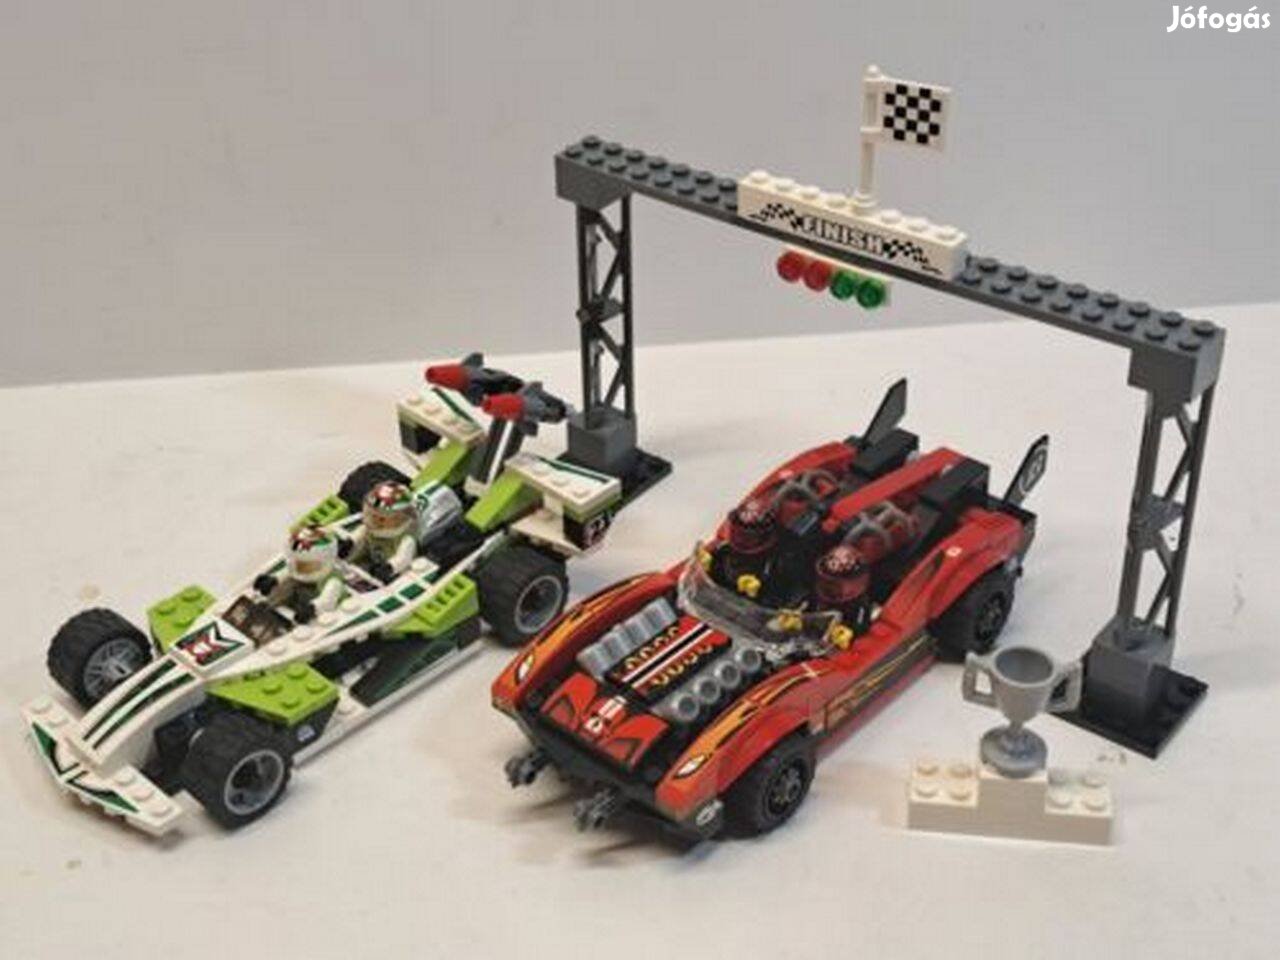 Lego 8898 - Wreckage Road - Extrém autóverseny 2 autóval, 4 figurával